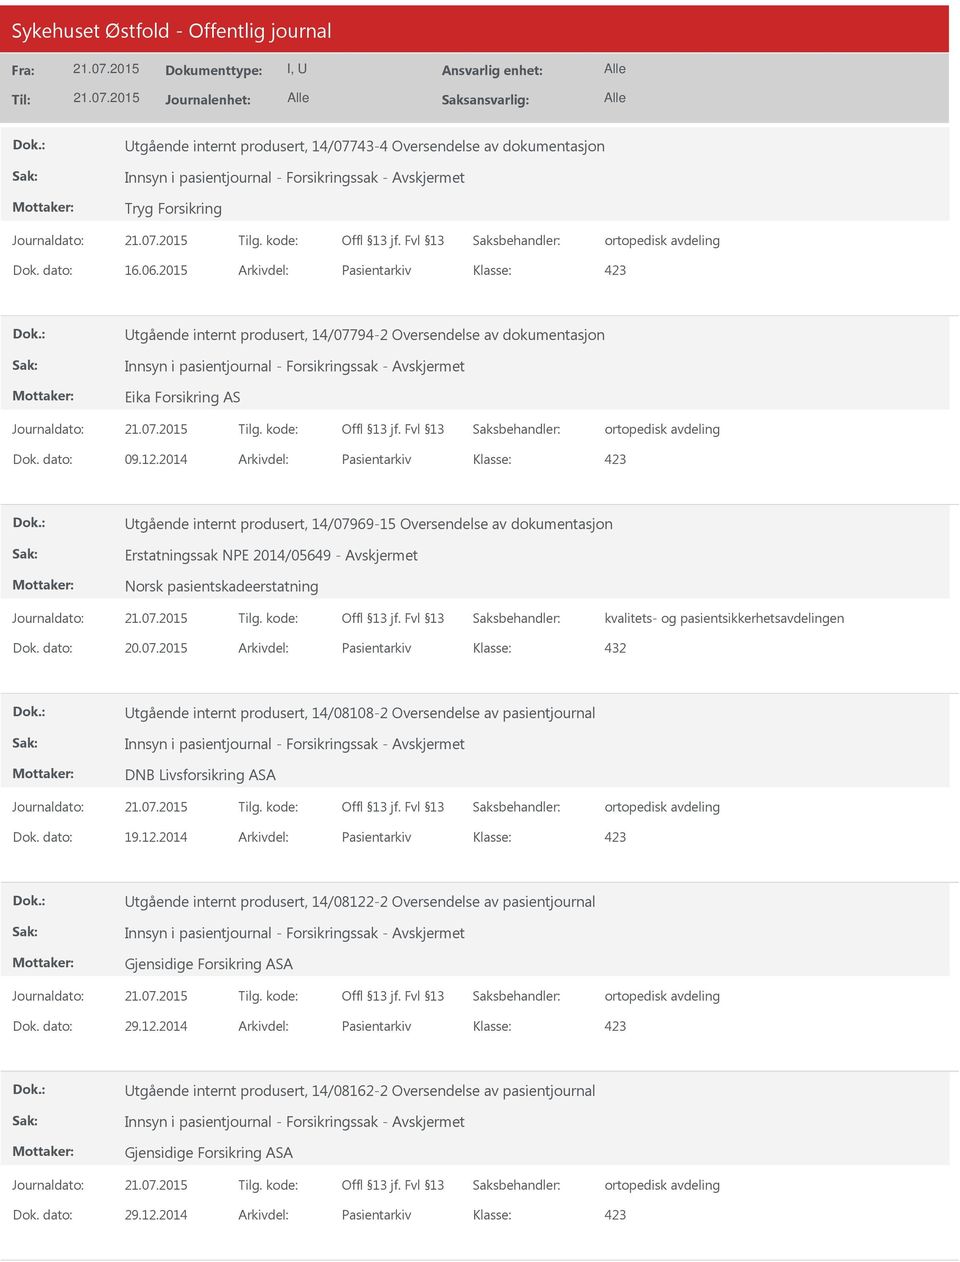 2014 Arkivdel: Pasientarkiv Utgående internt produsert, 14/07969-15 Oversendelse av dokumentasjon Erstatningssak NPE 2014/05649 - Avskjermet Norsk pasientskadeerstatning kvalitets- og